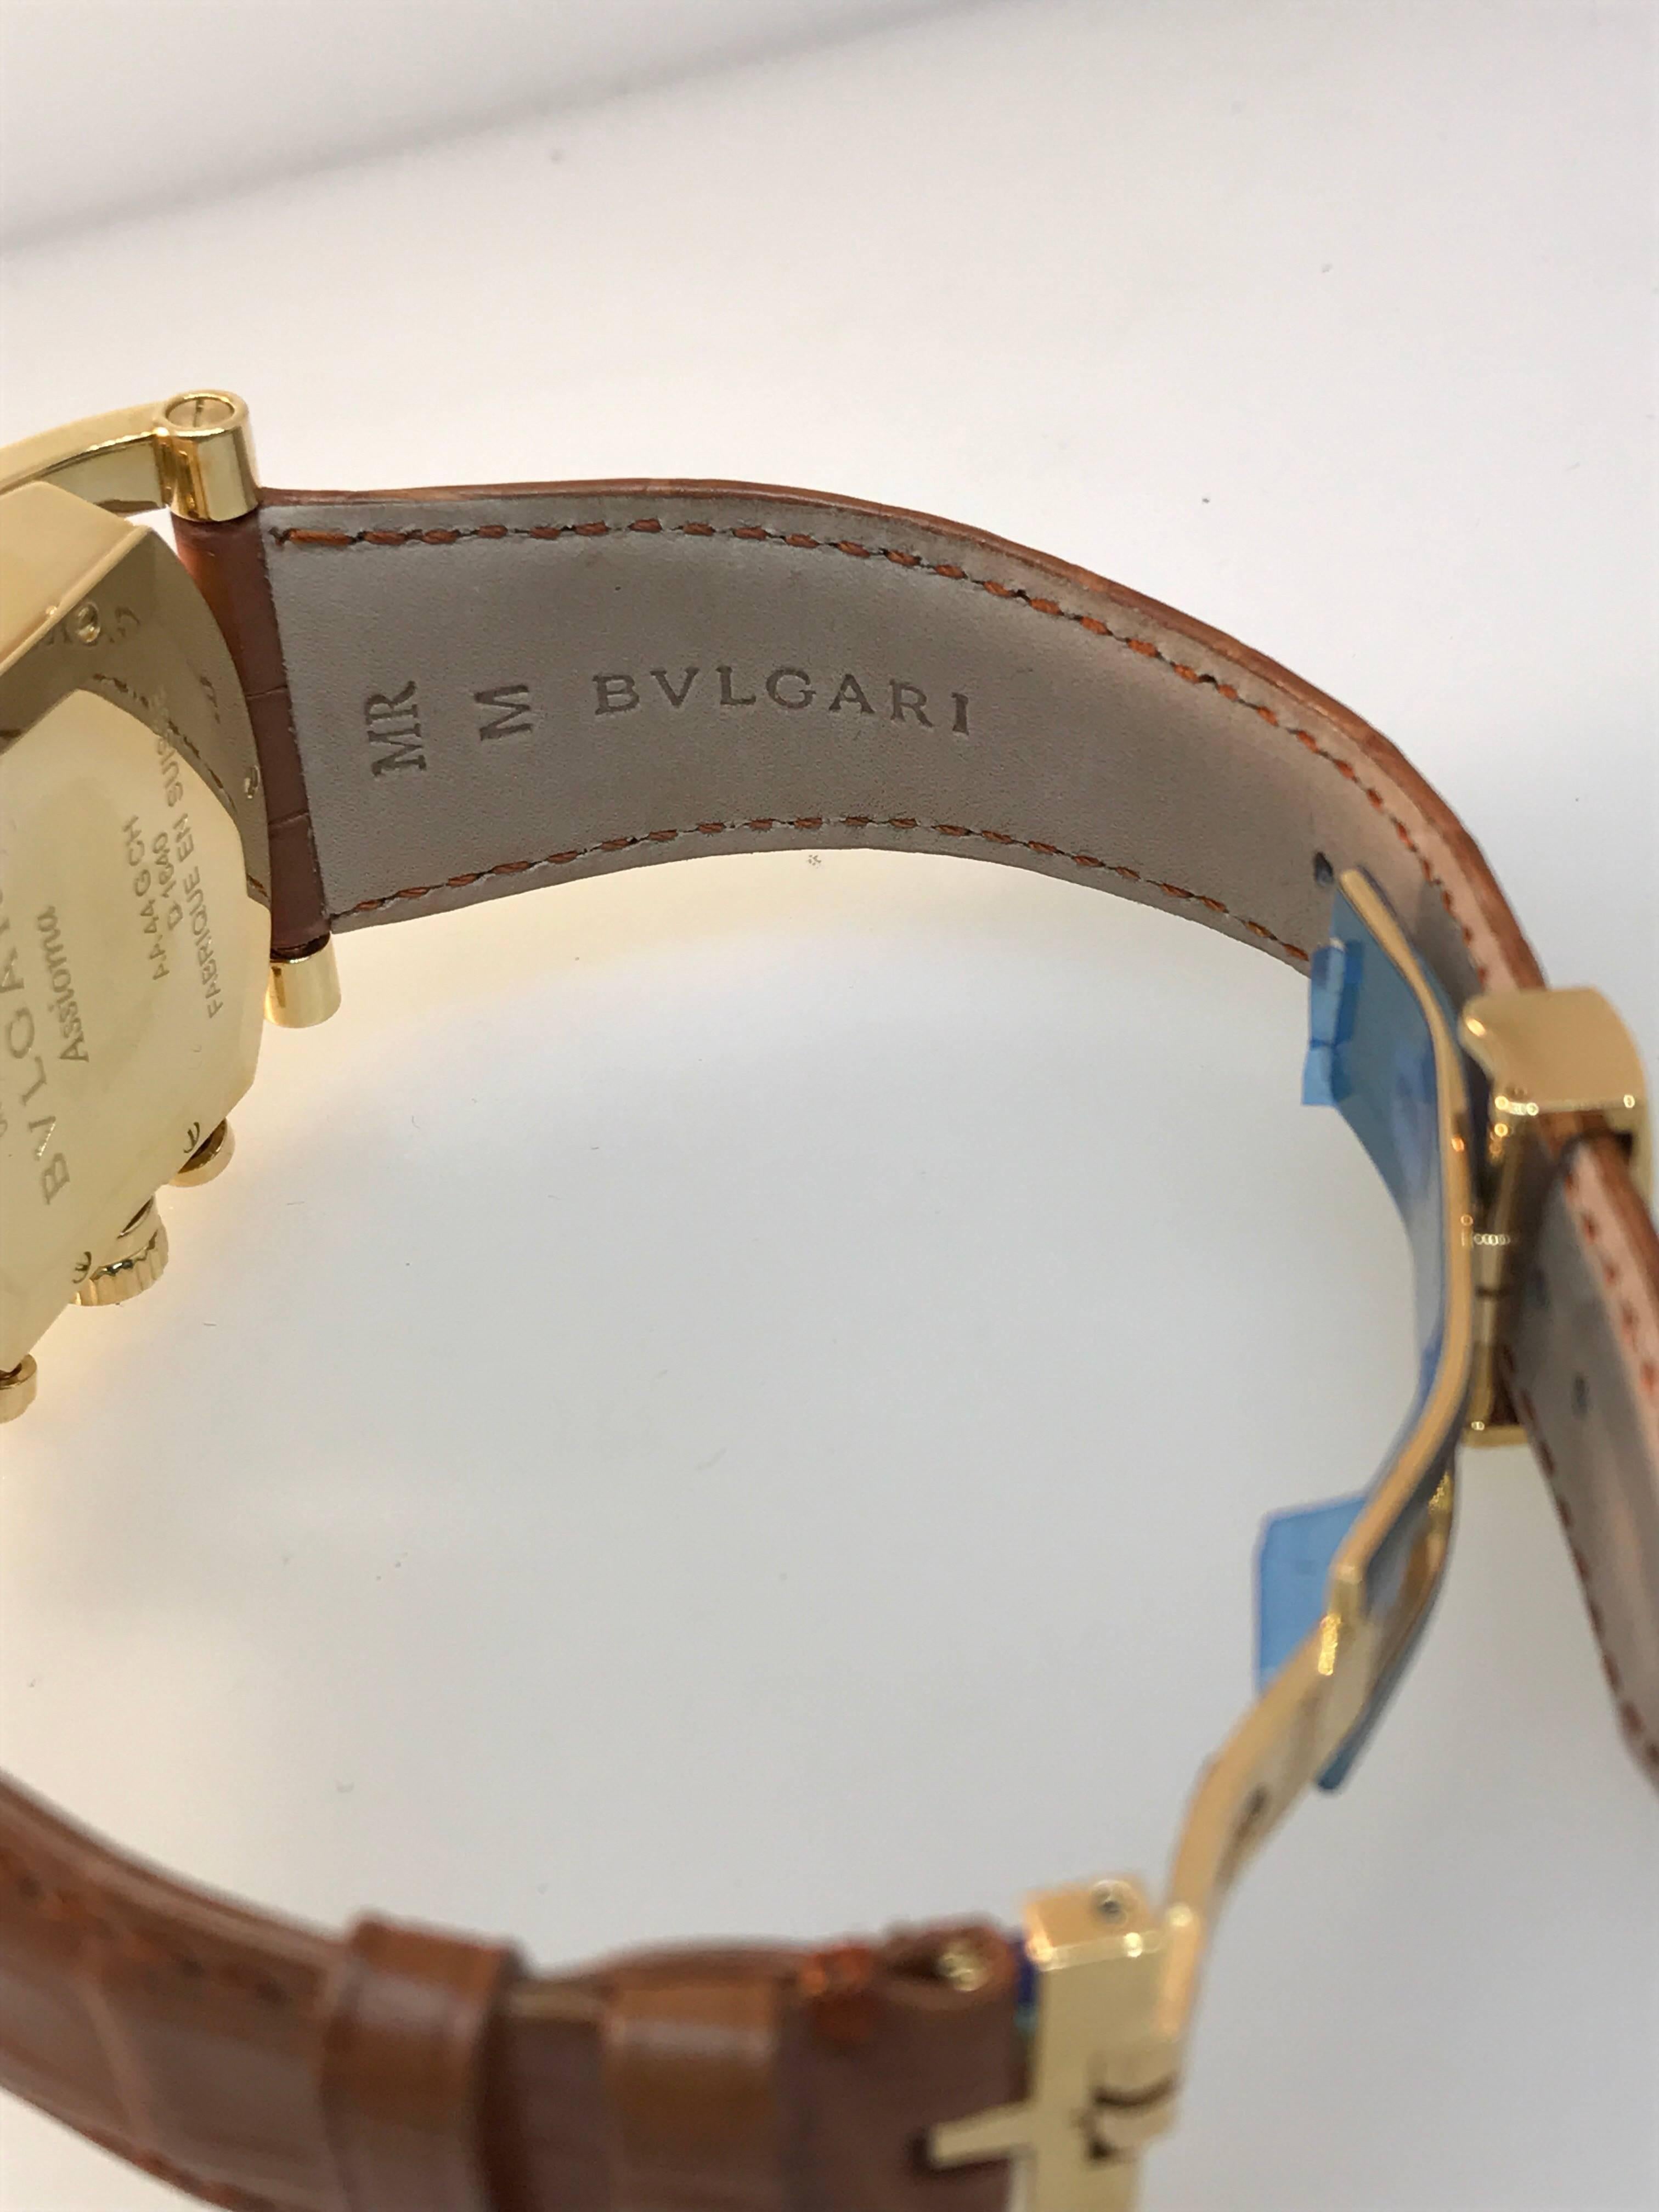 Bulgari Yellow Gold Assioma Chronograph Automatic Wristwatch 6